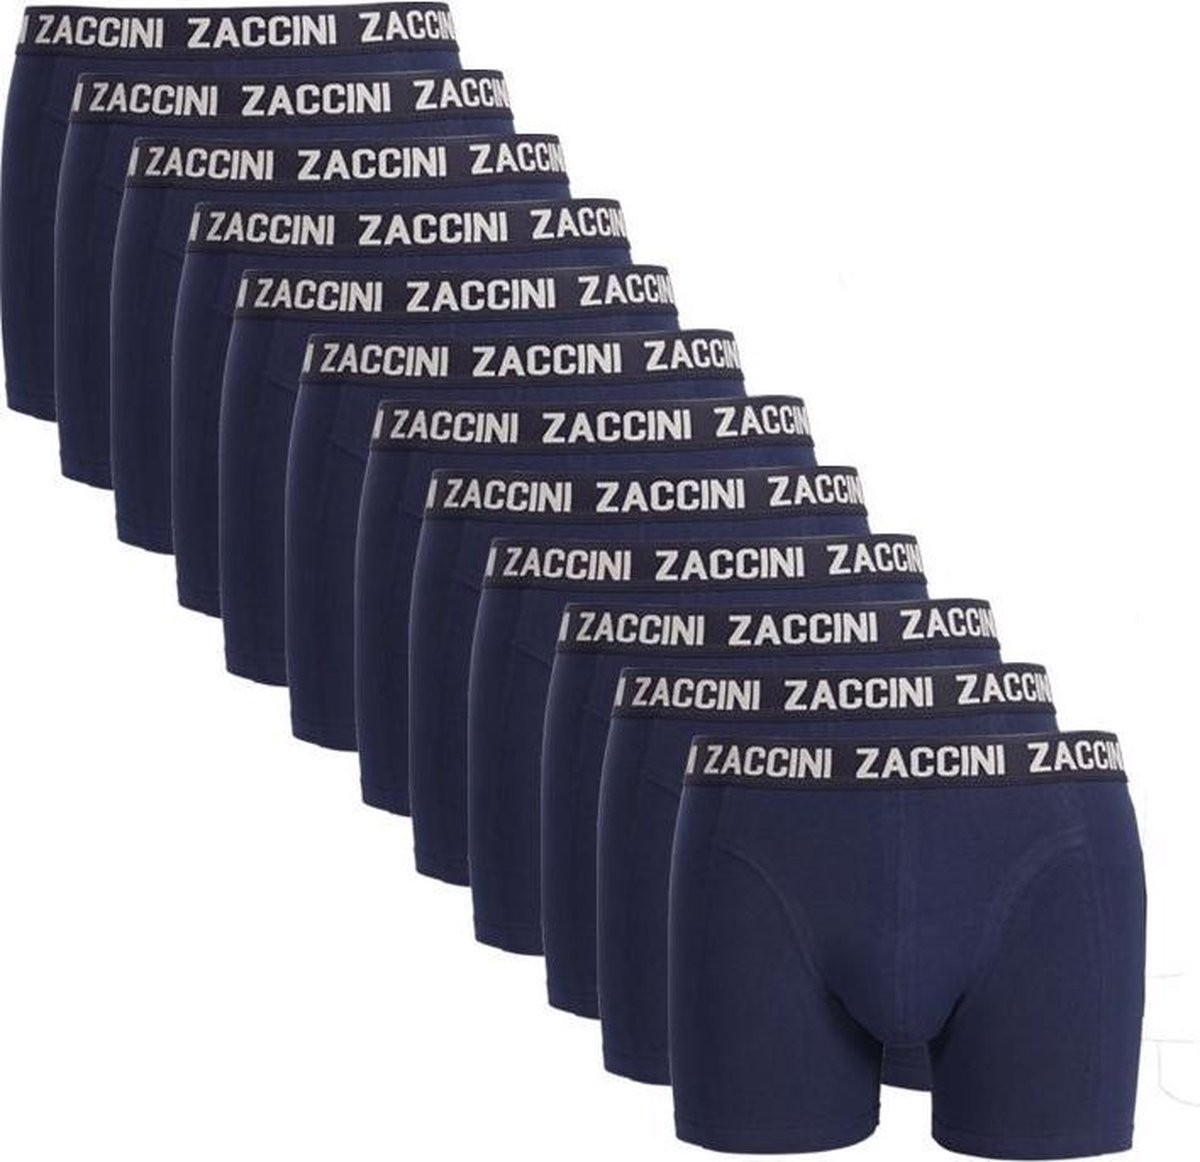 Zaccini 12 boxershorts navy